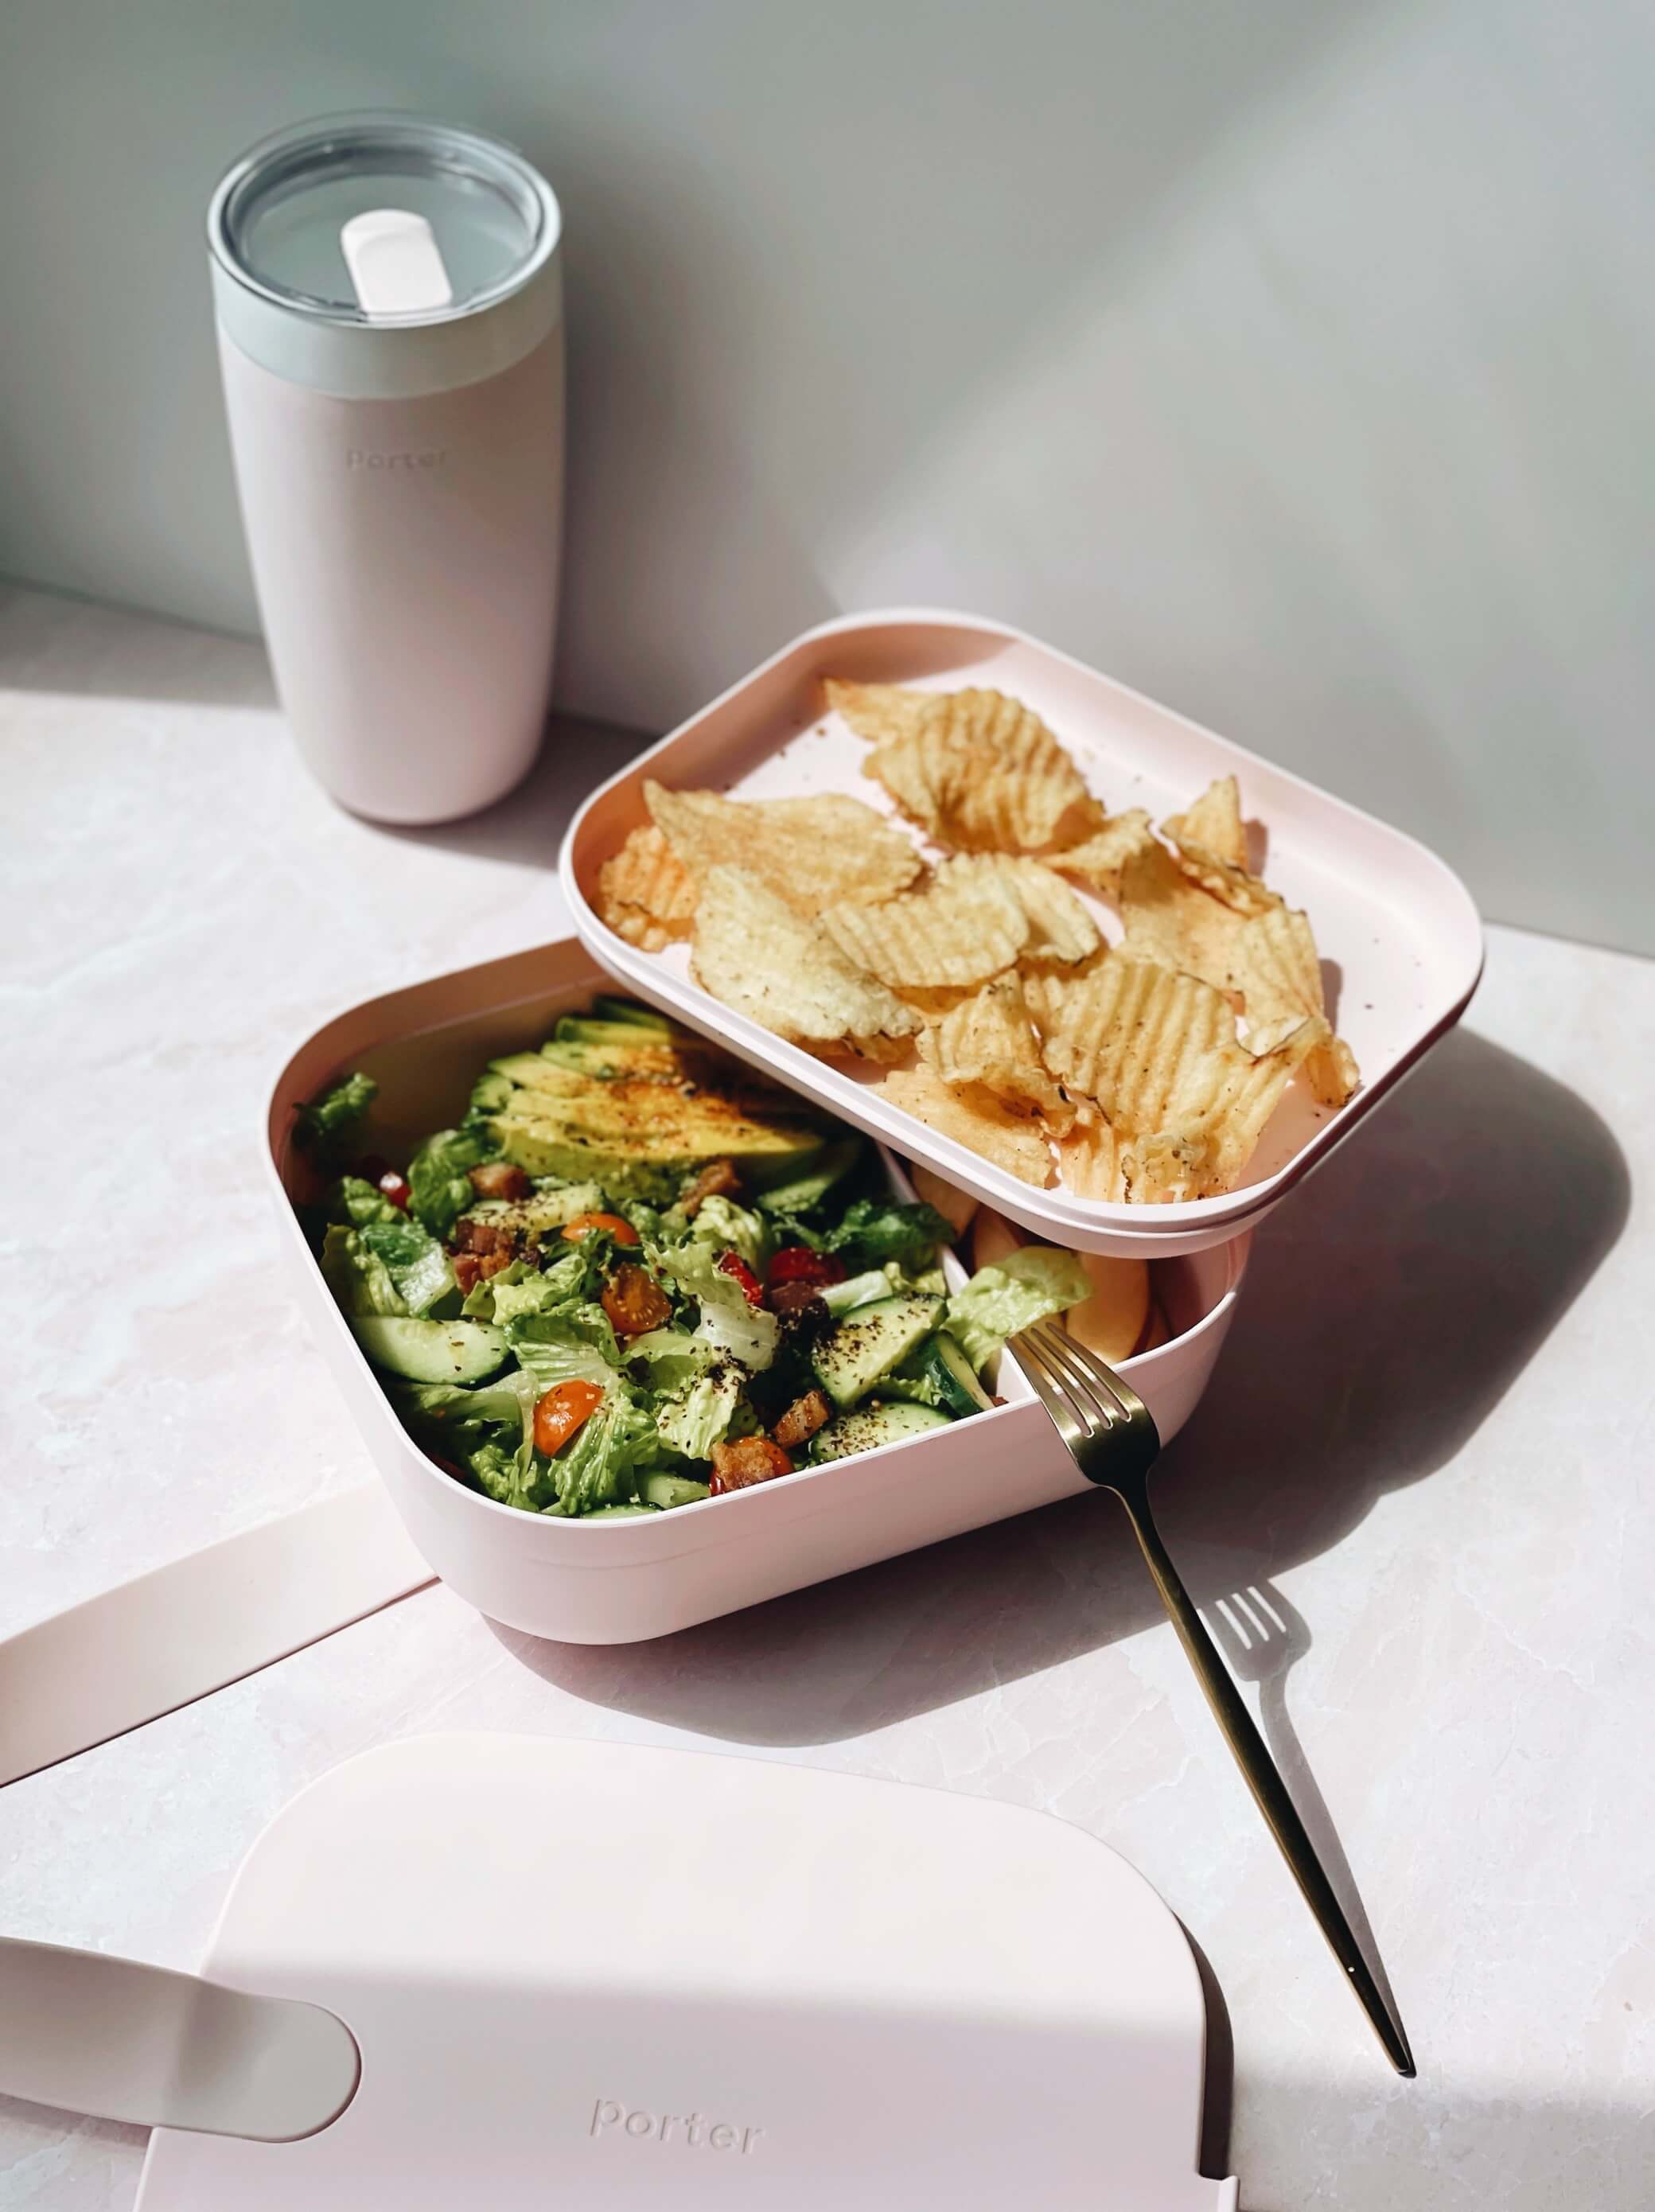 Salad Bowl & Lunch Box Leak Proof Bento Container -6 Pcs Set